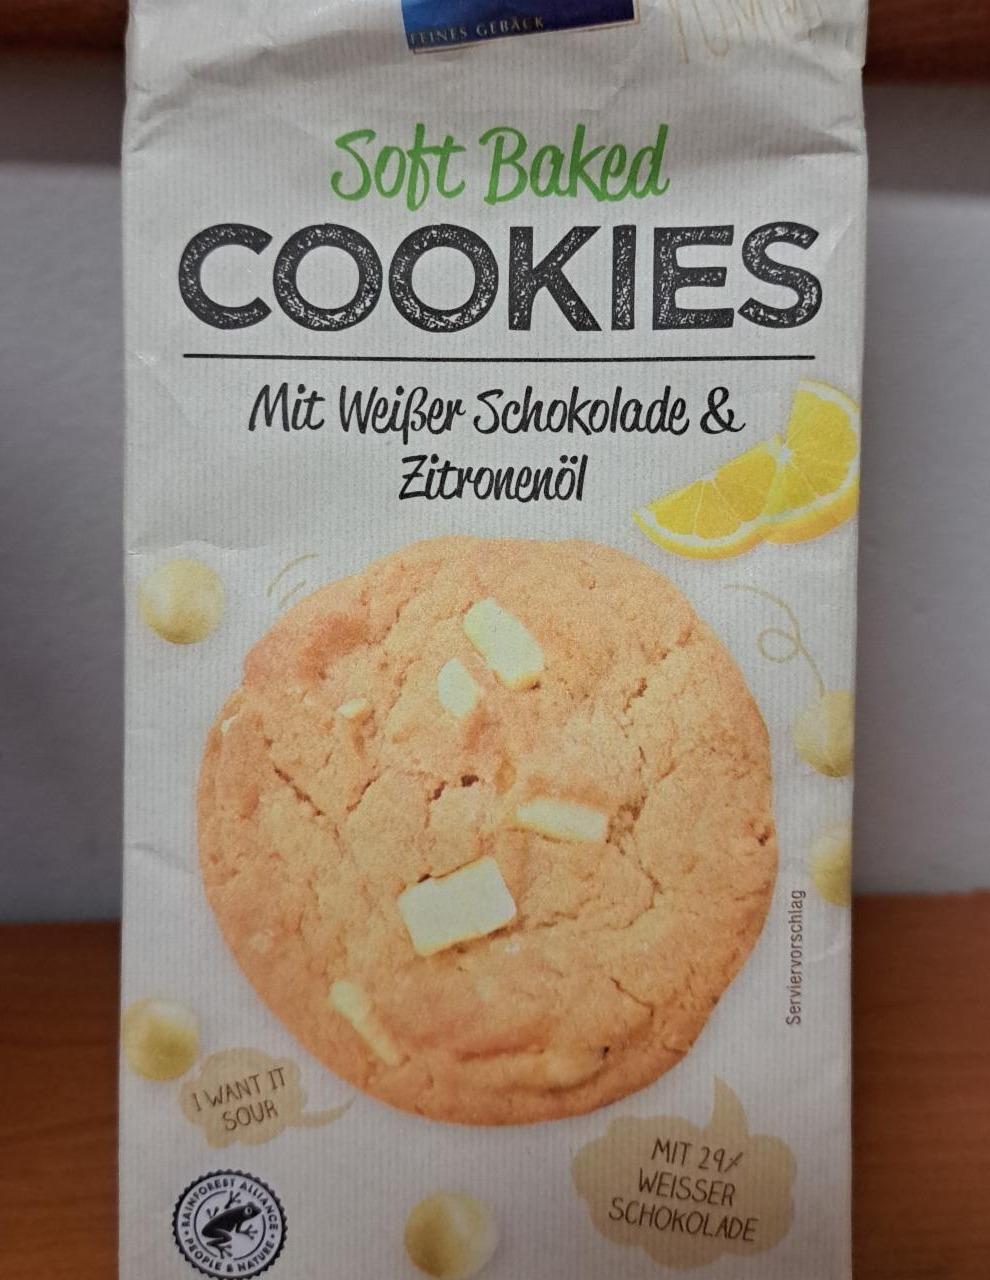 Fotografie - Soft Baked Cookies mit weisser schokolade & zitronenol Biscoteria